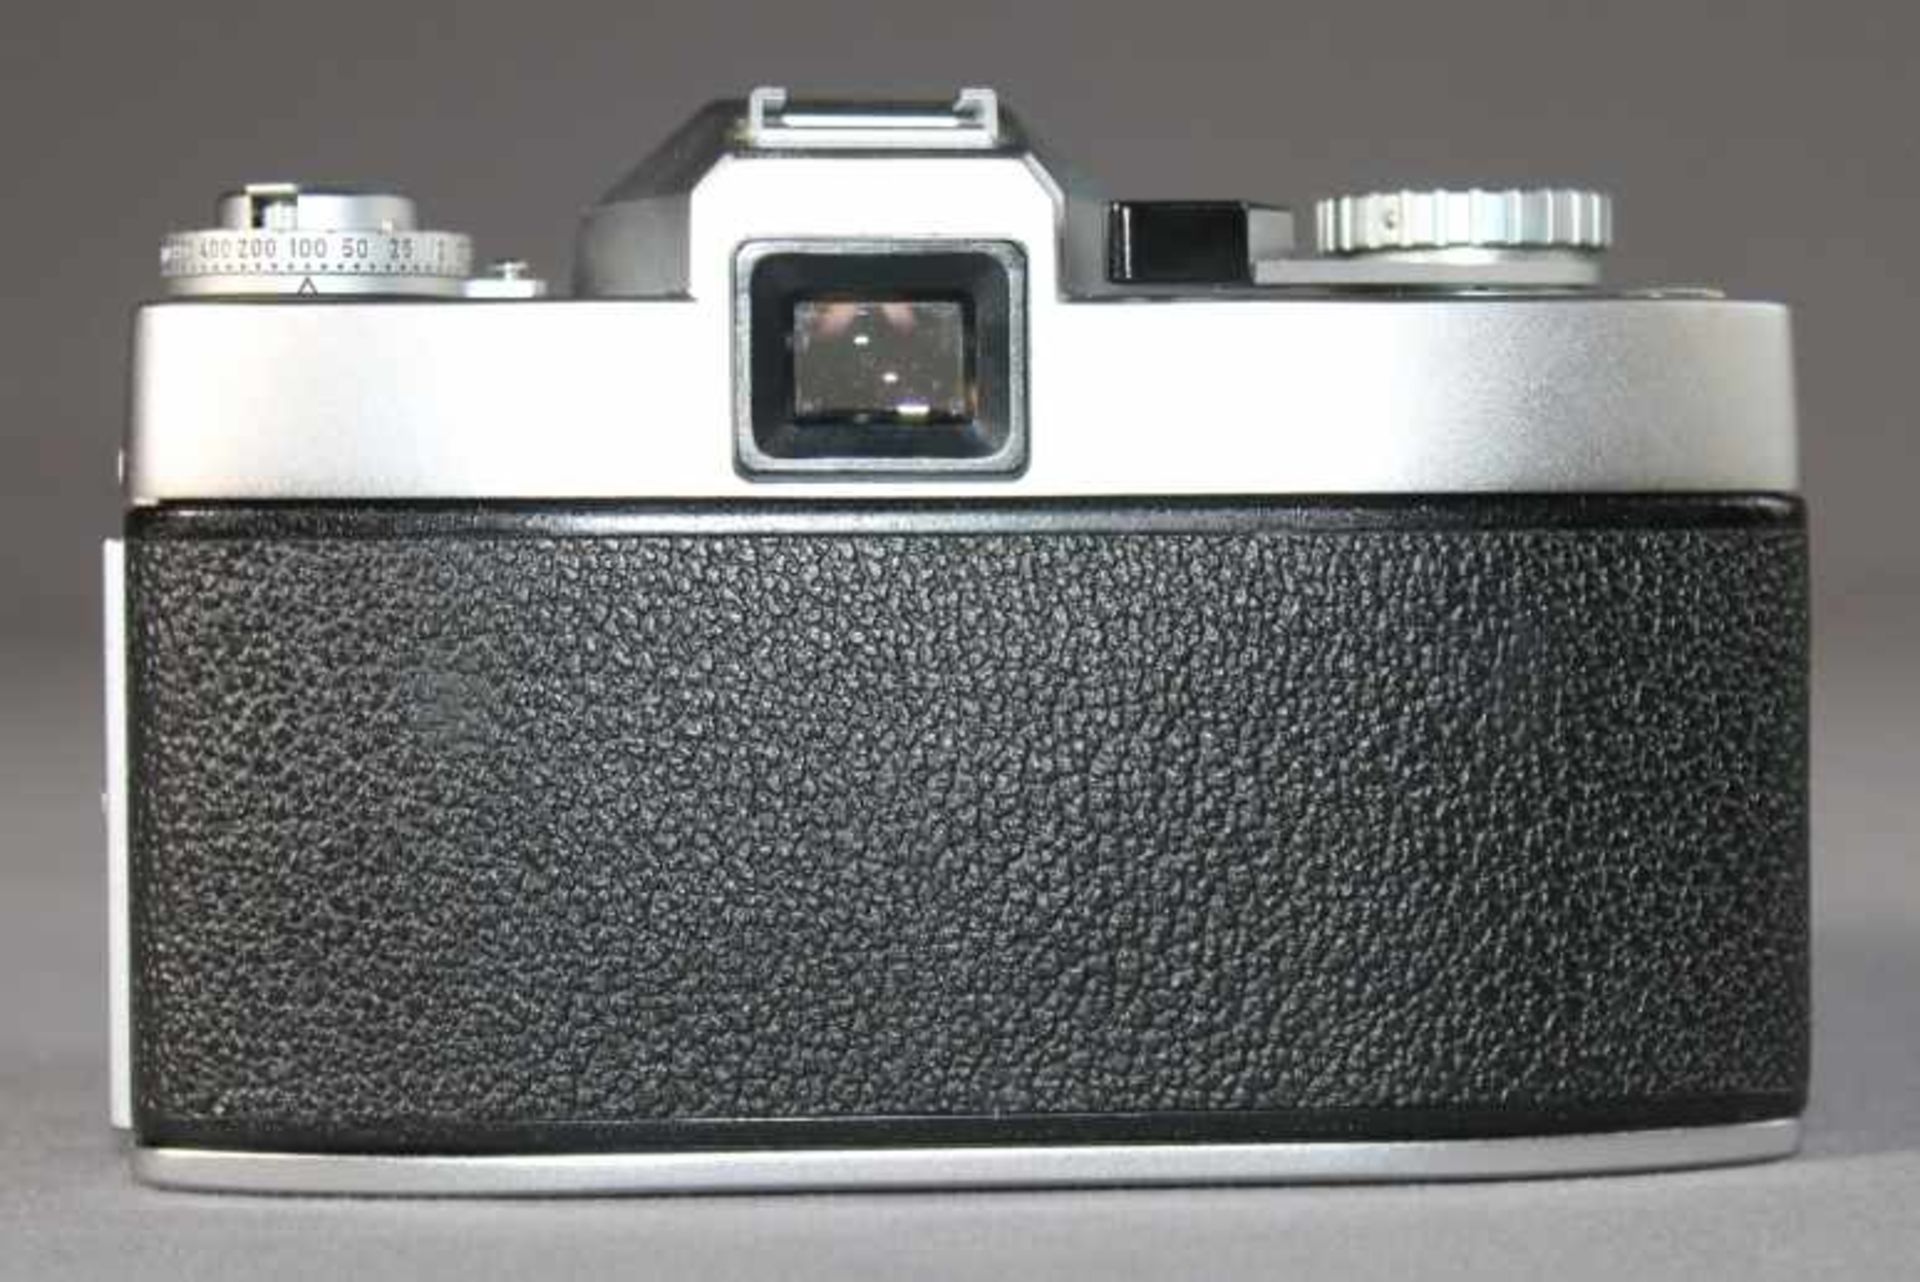 1 Spiegelreflexkamera "Leicaflex", Gehäusenr. 1125311, mit Summicron-R 1:2/50 Nr. 2158237, manueller - Bild 2 aus 4